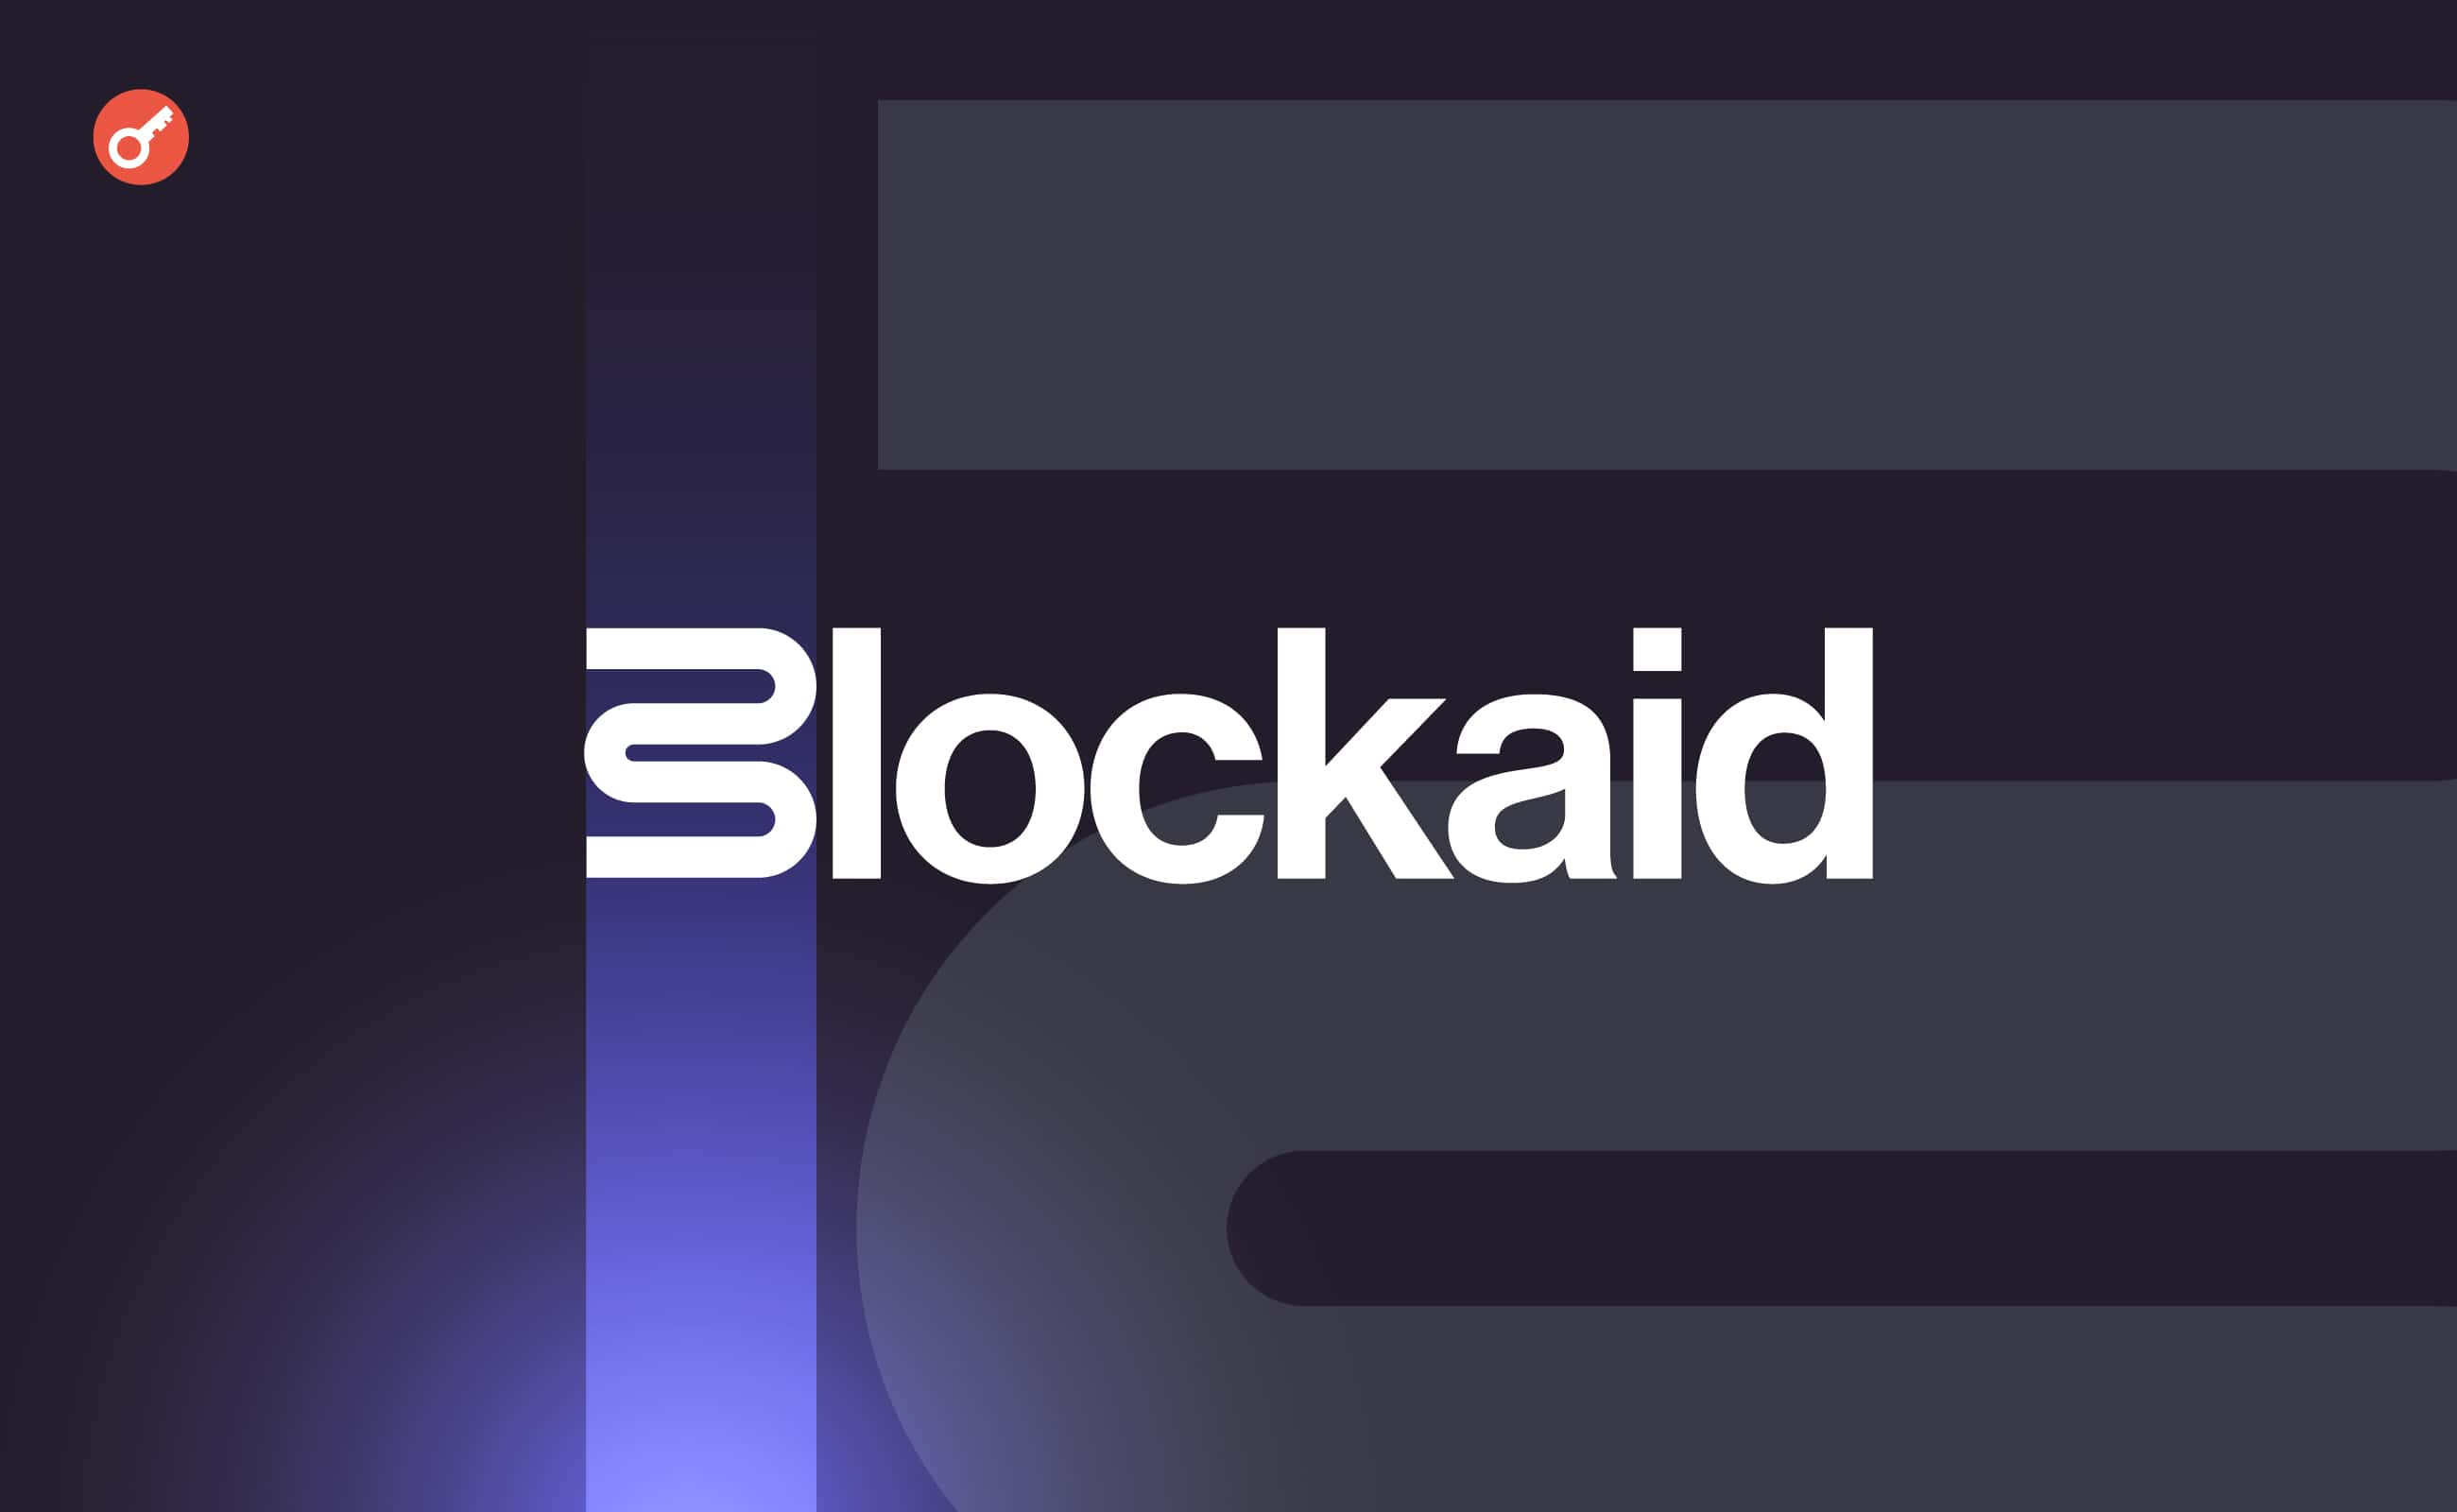 Blockaid залучила $33 млн інвестицій . Головний колаж новини.